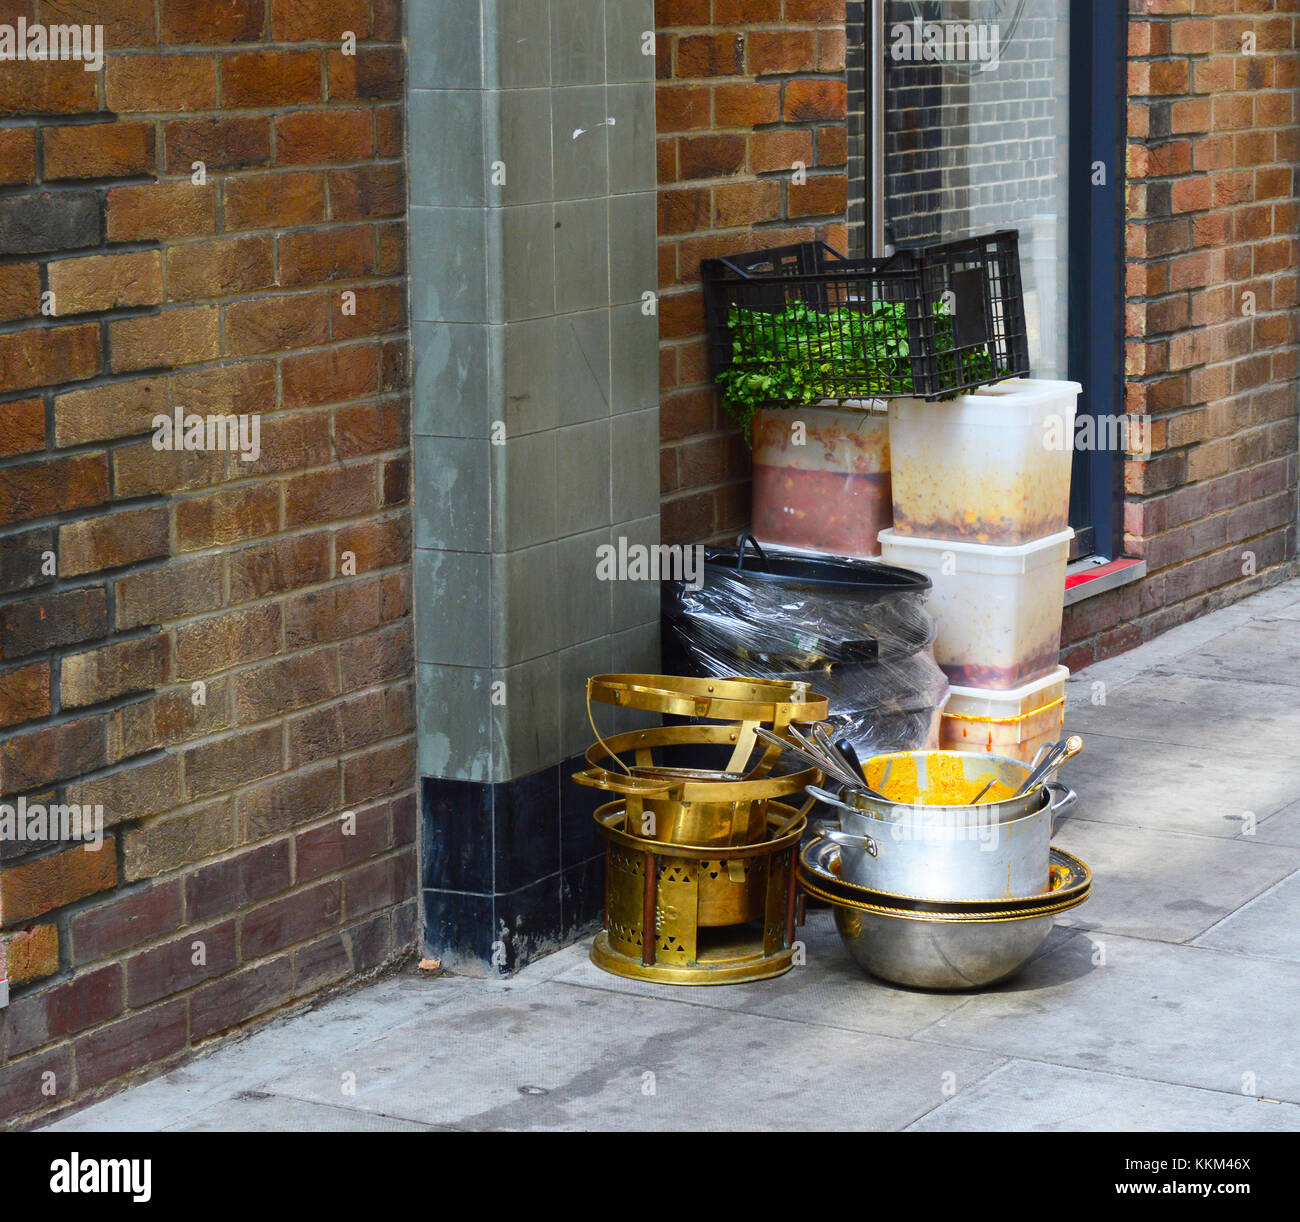 Une photo de la vaisselle sale et la préparation le assis sur la rue Banque D'Images